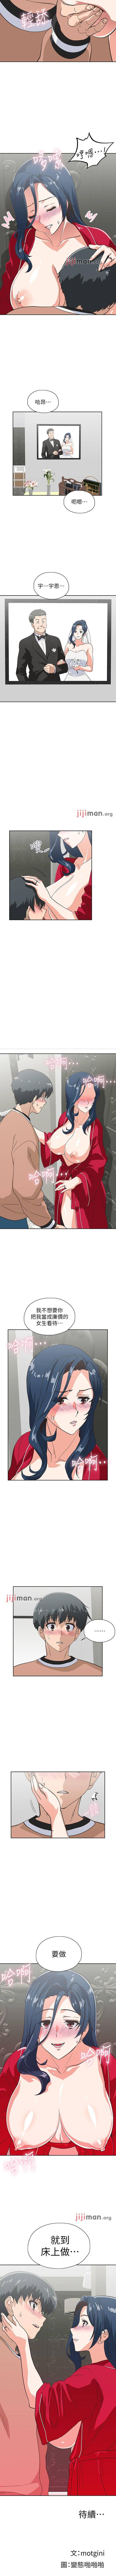 【周四连载】梦幻速食店（作者：motgini&變態啪啪啪） 第1~36话 183